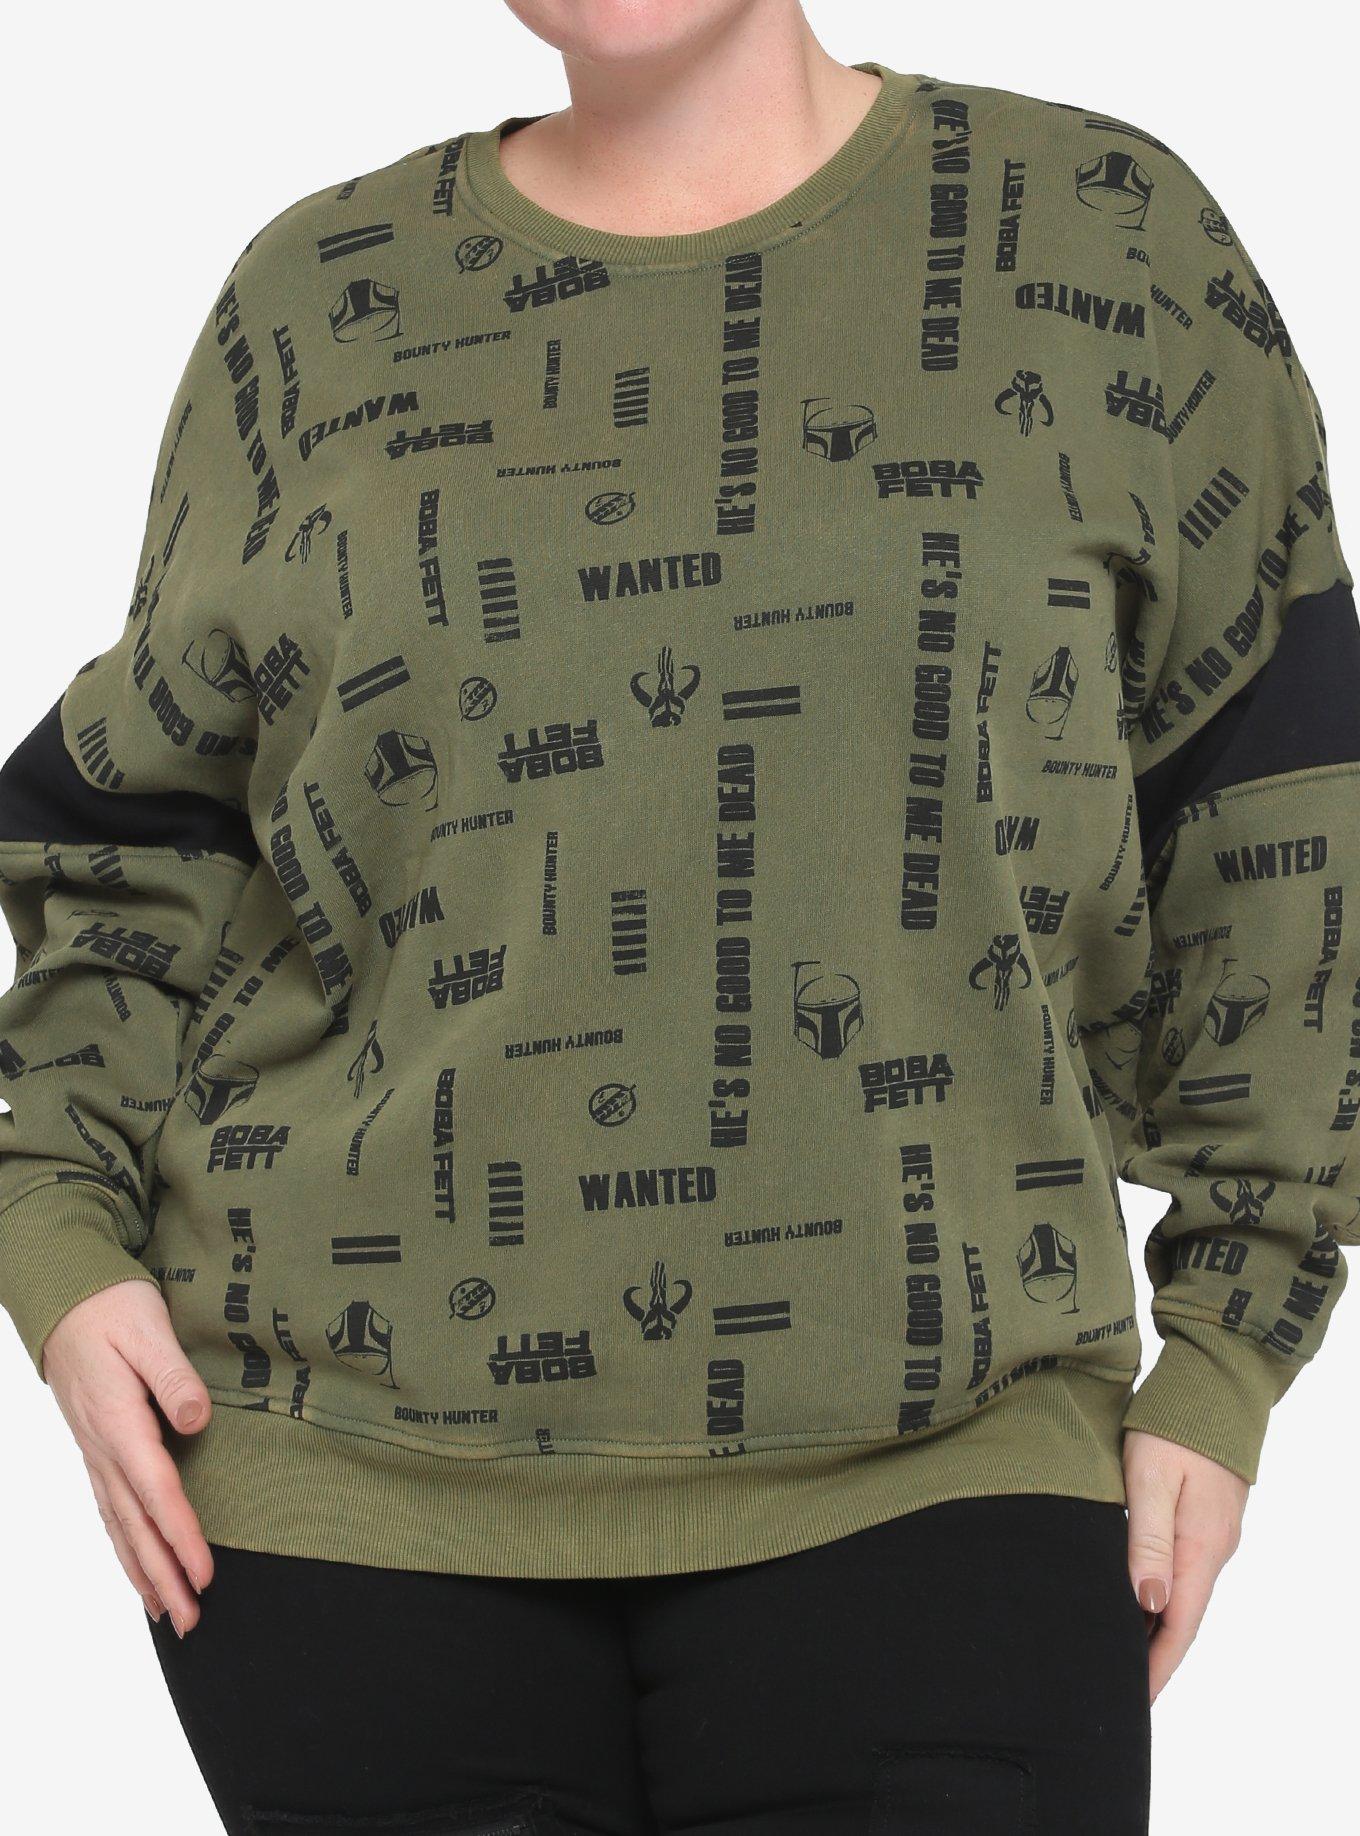 Her Universe Star Wars Boba Fett Logos Girls Sweatshirt Plus Size, BLACK, hi-res